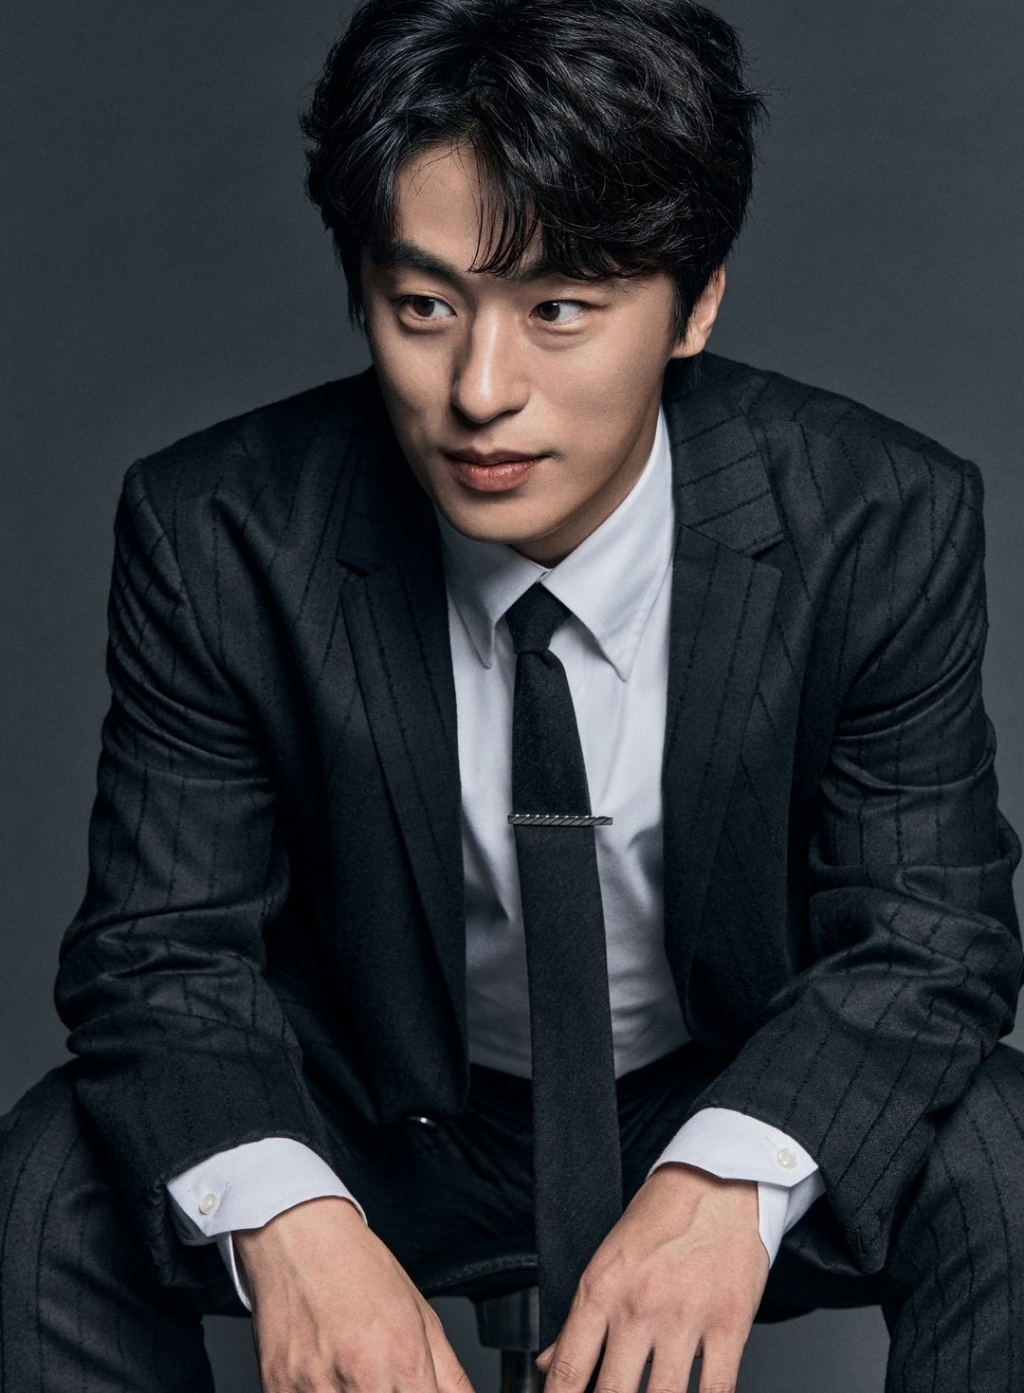 Sao Hàn ‘cân đẹp’ cả vai trò diễn viên lẫn đạo diễn: Lee Jung Jae, Son Seok Gu…